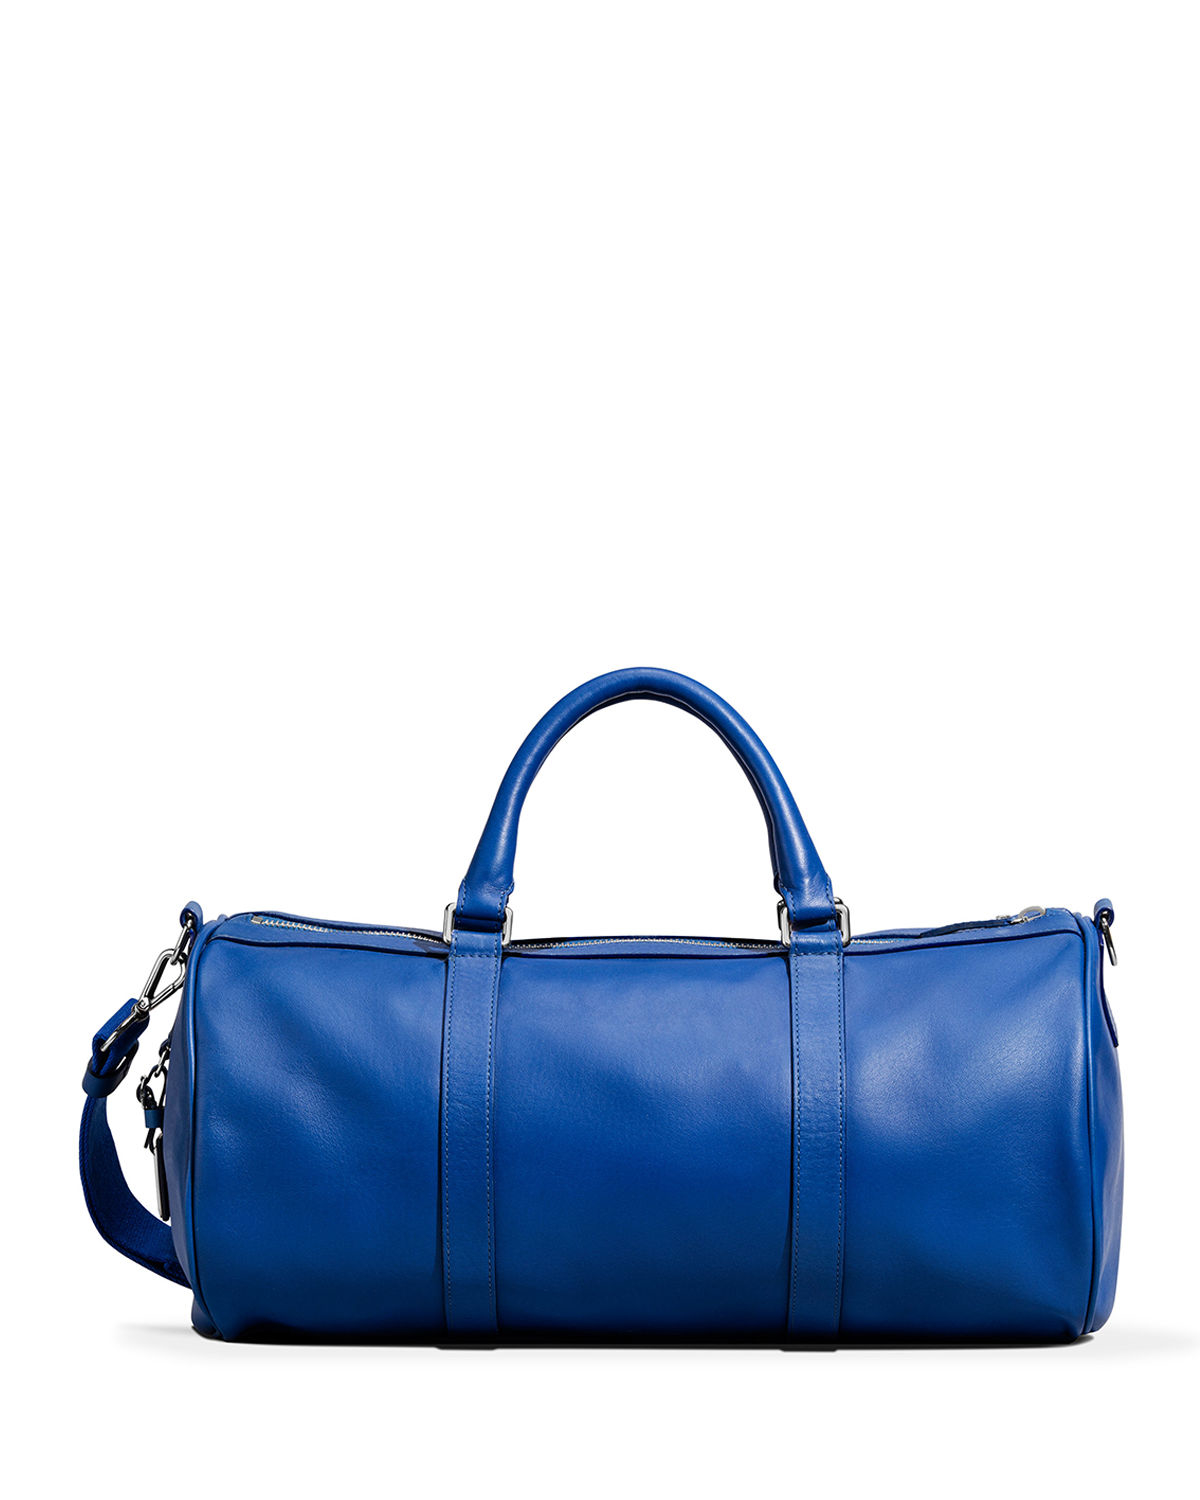 Shinola Medium Leather Duffle Bag in Blue | Lyst